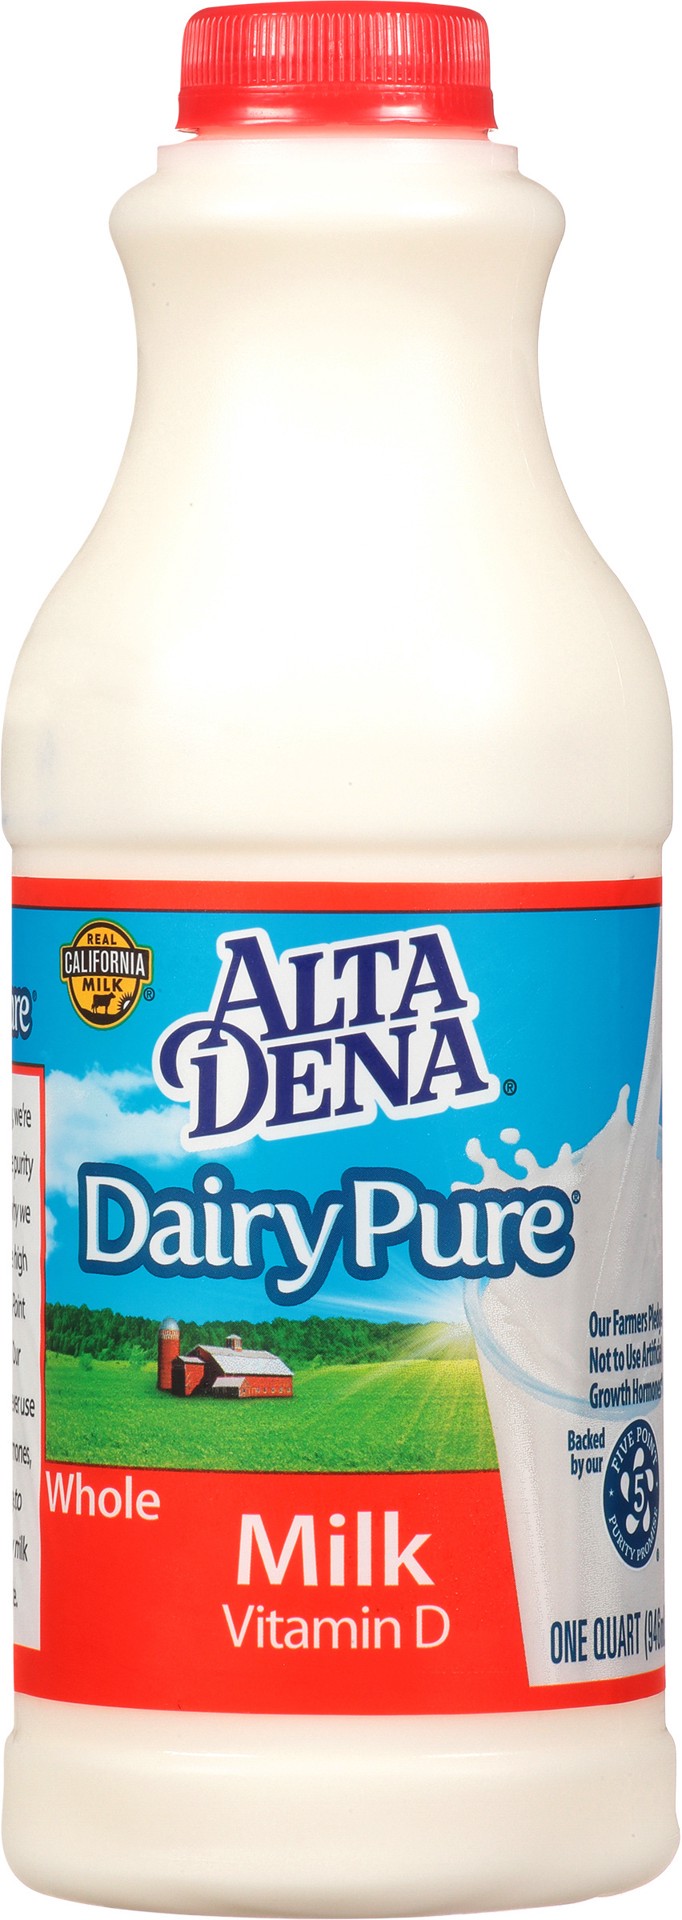 slide 1 of 9, Dairy Pure Vitamin D Milk, Whole Milk Bottle - 1 Quart, 1 qt